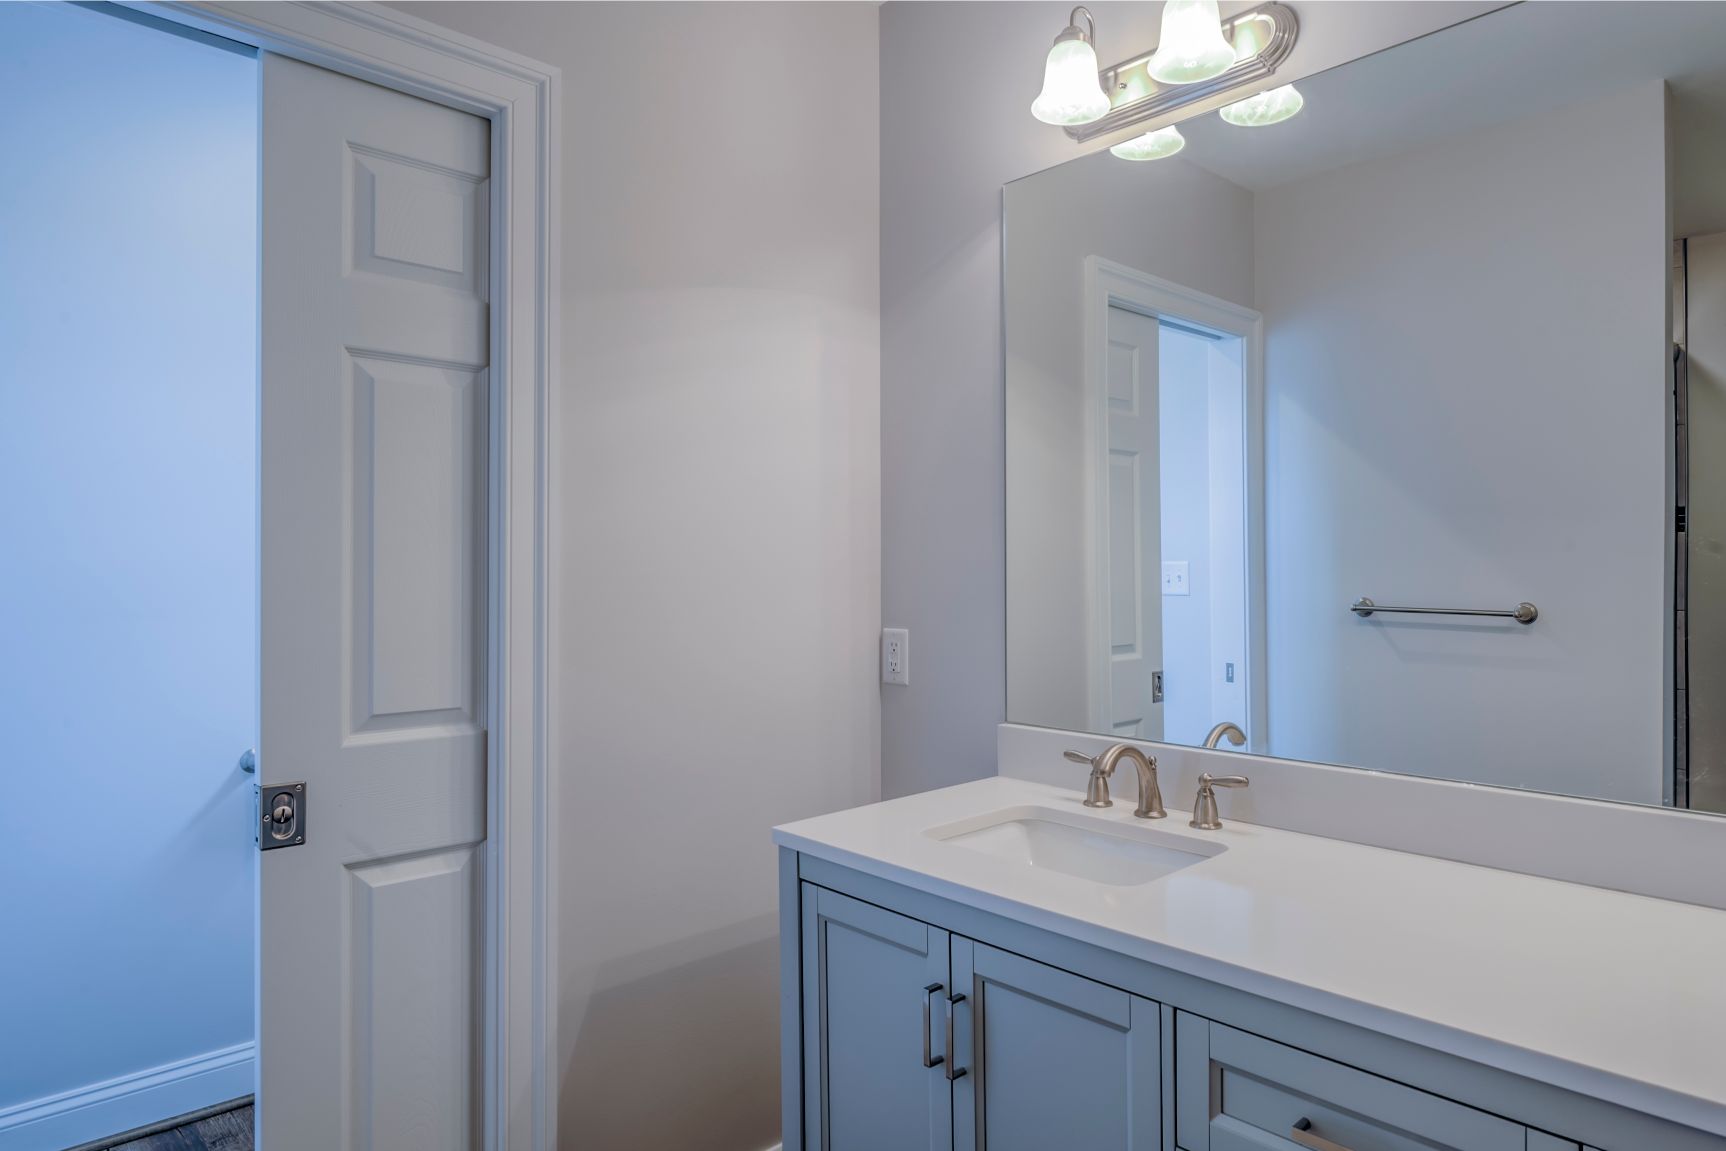 New Addition in October Glory, Ocean View DE - Bathroom with White Sliding Door